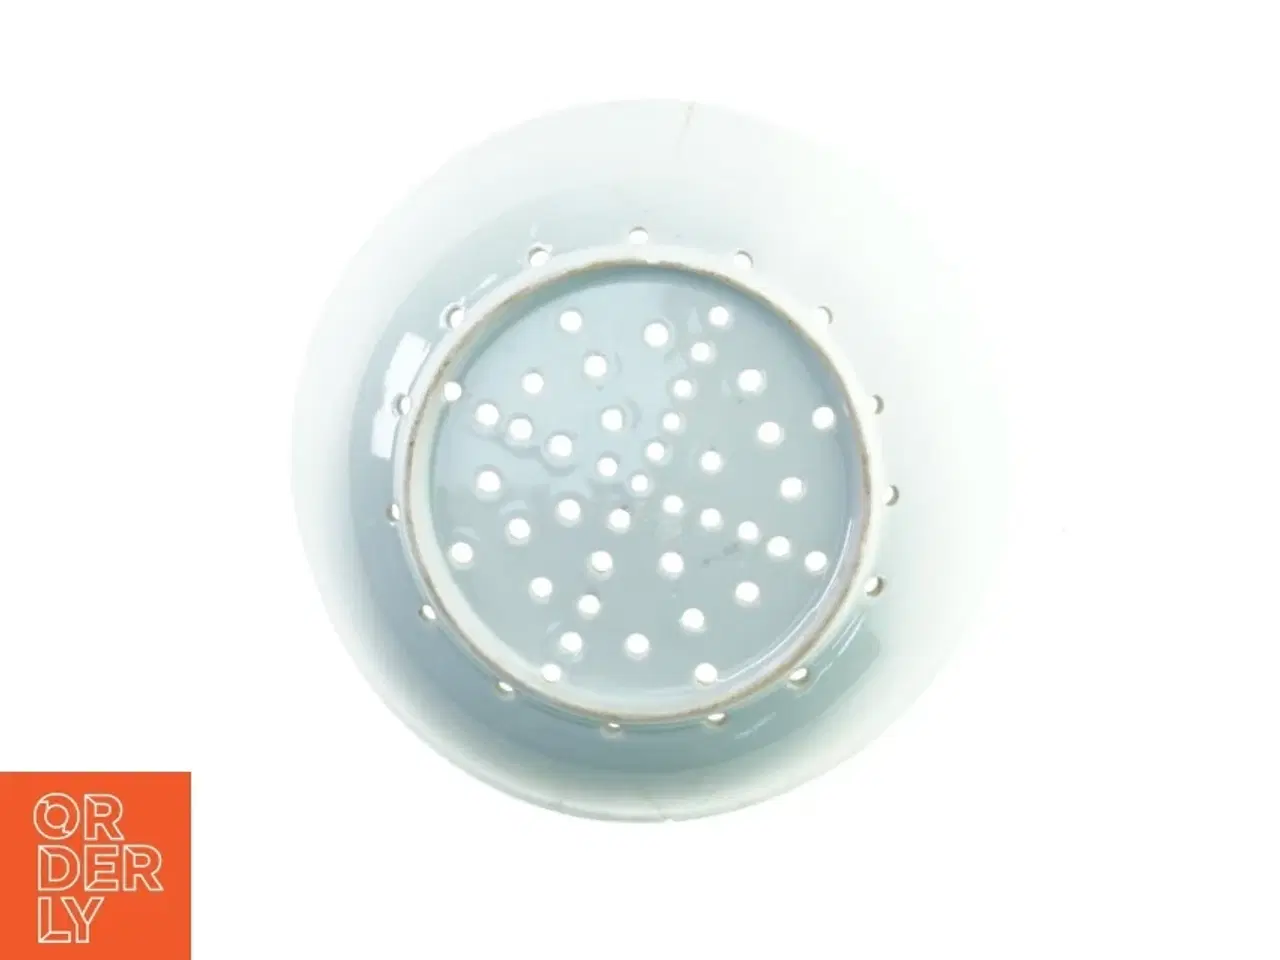 Billede 2 - Sigte skål i porcelæn (str. 20 x 5 cm)